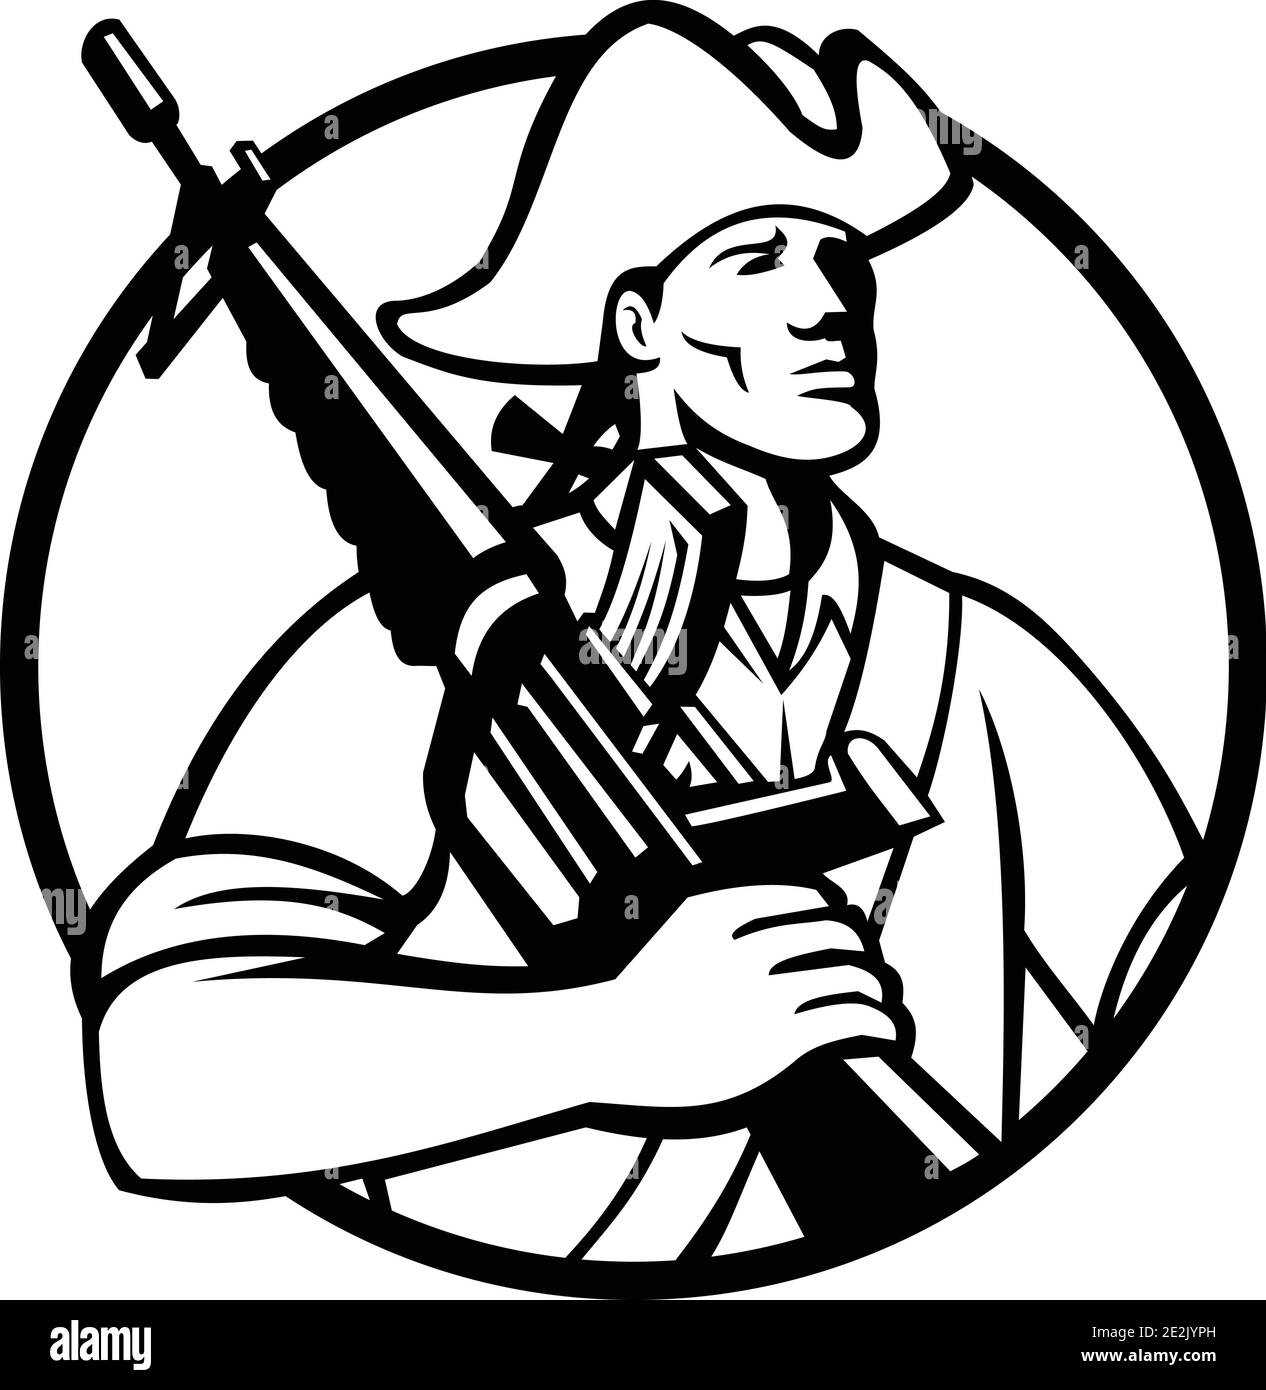 Mascot illustrazione di un patriota americano rivoluzionario solder con assalto fucile sulla spalla guardando in avanti visto dalla parte anteriore in entrata cerchio su isolo Illustrazione Vettoriale